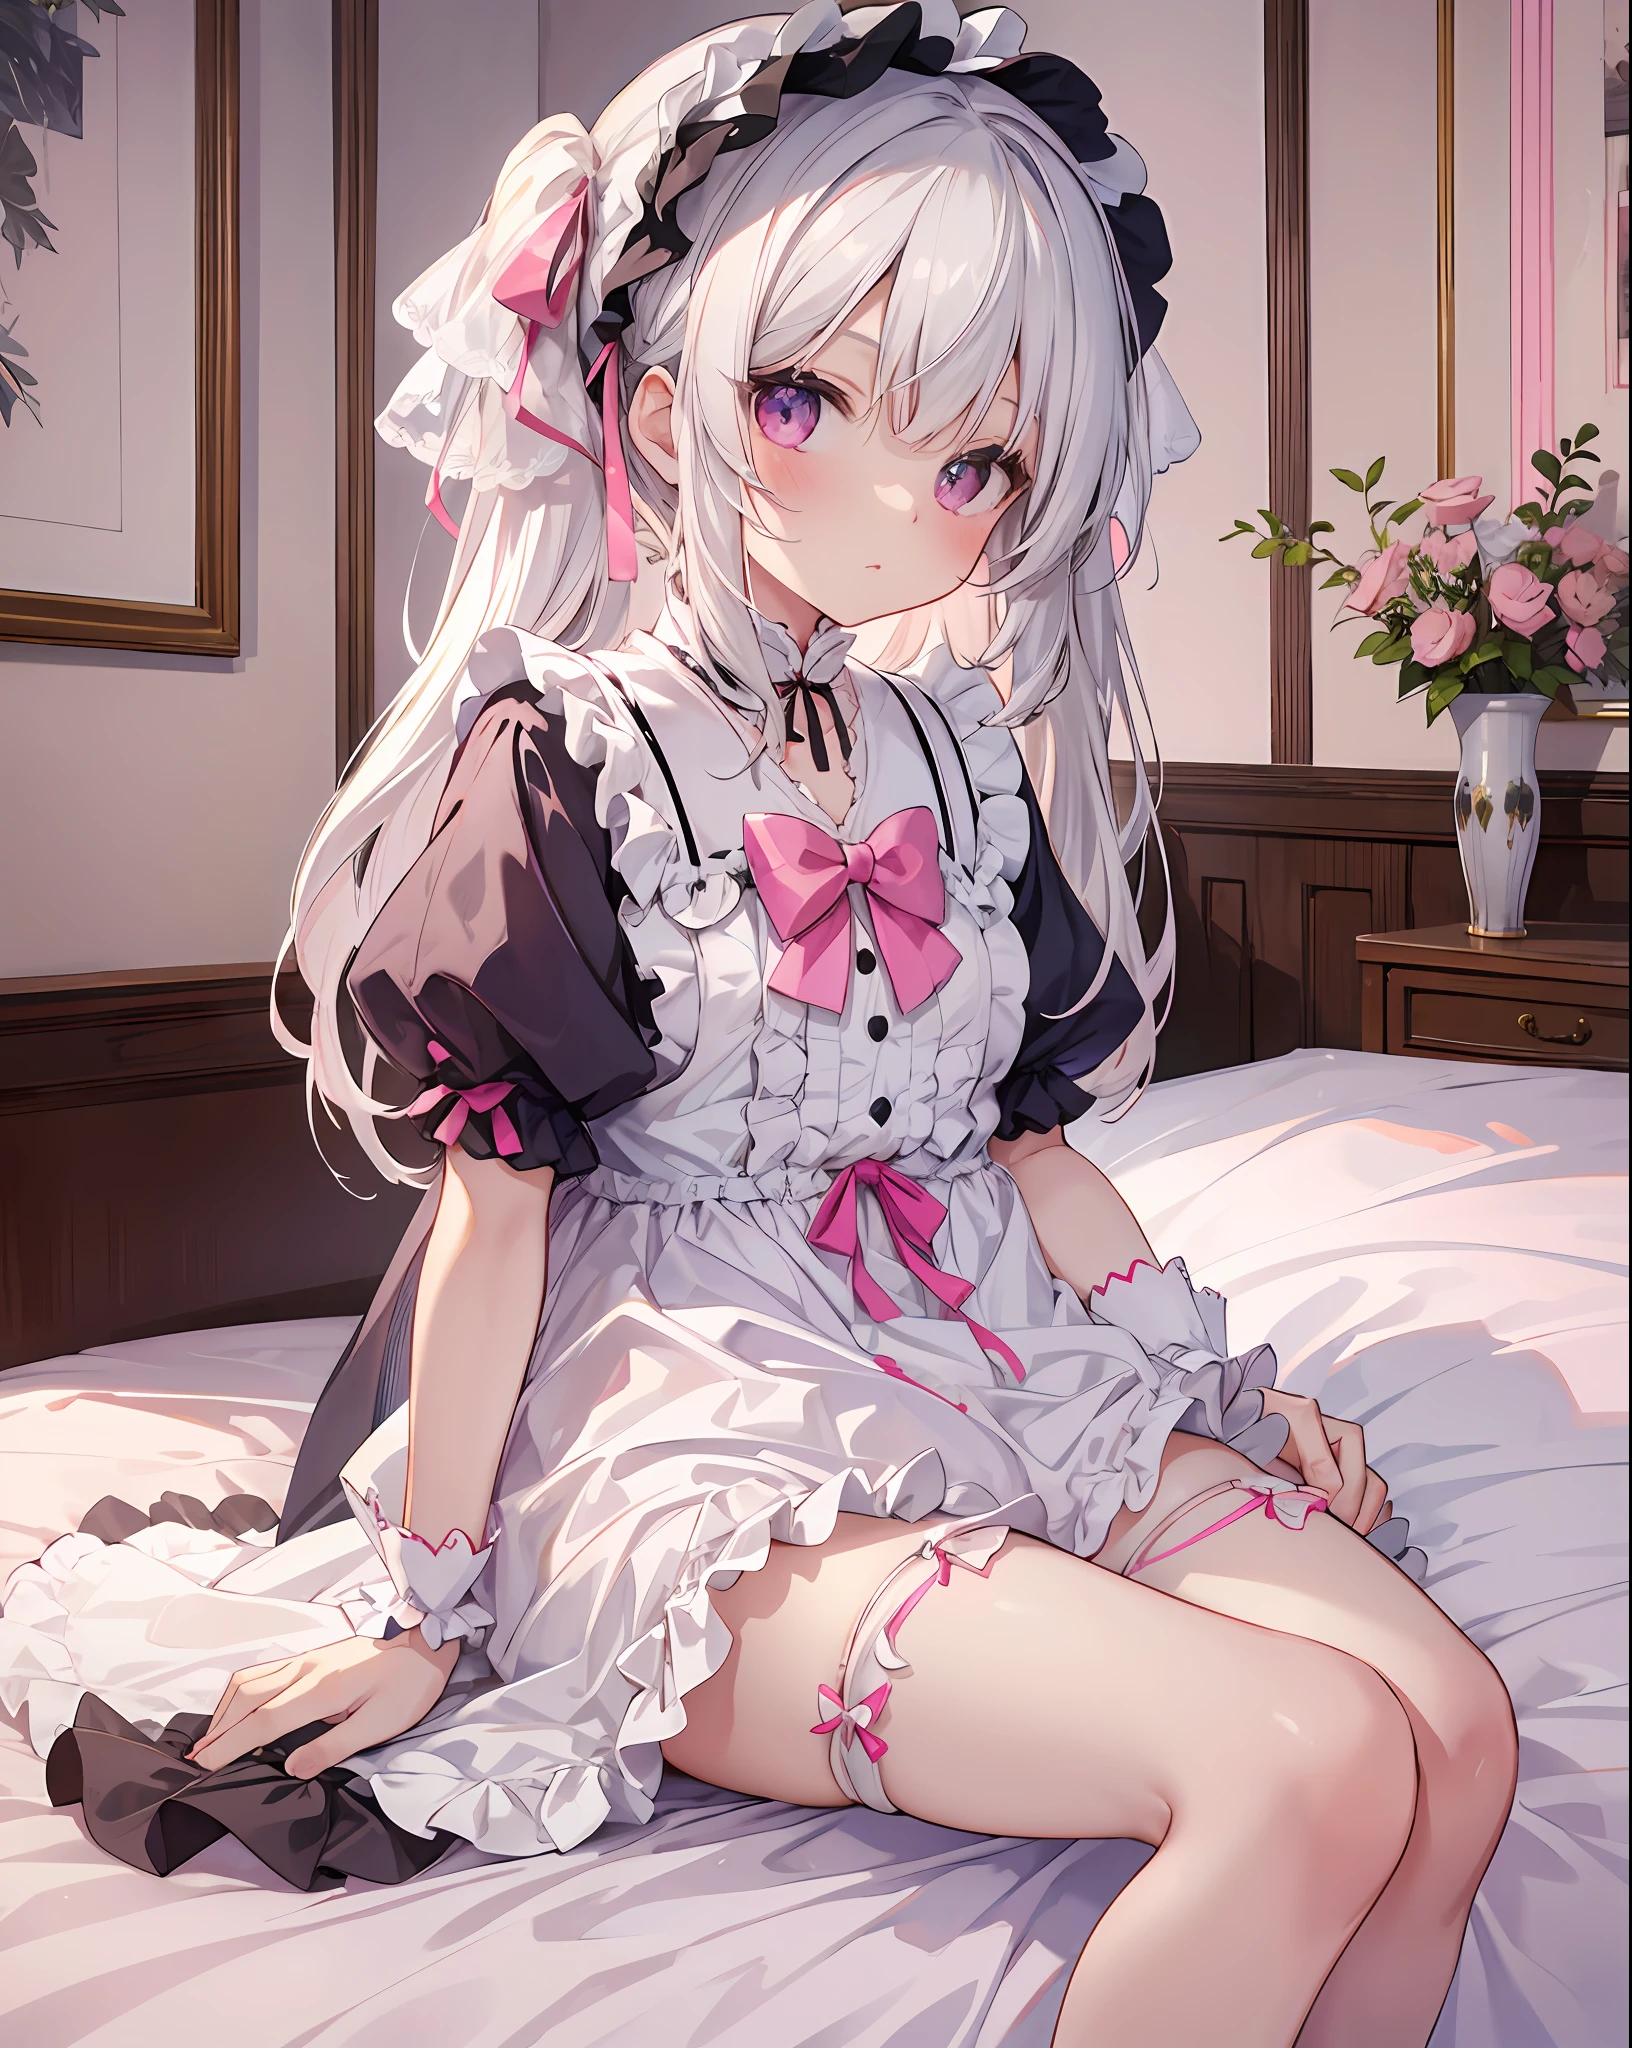 Una linda peli blanca ，Vestida de lolita y seda blanca.，Sentado al lado de la cama，Se pueden ver bragas rosas.